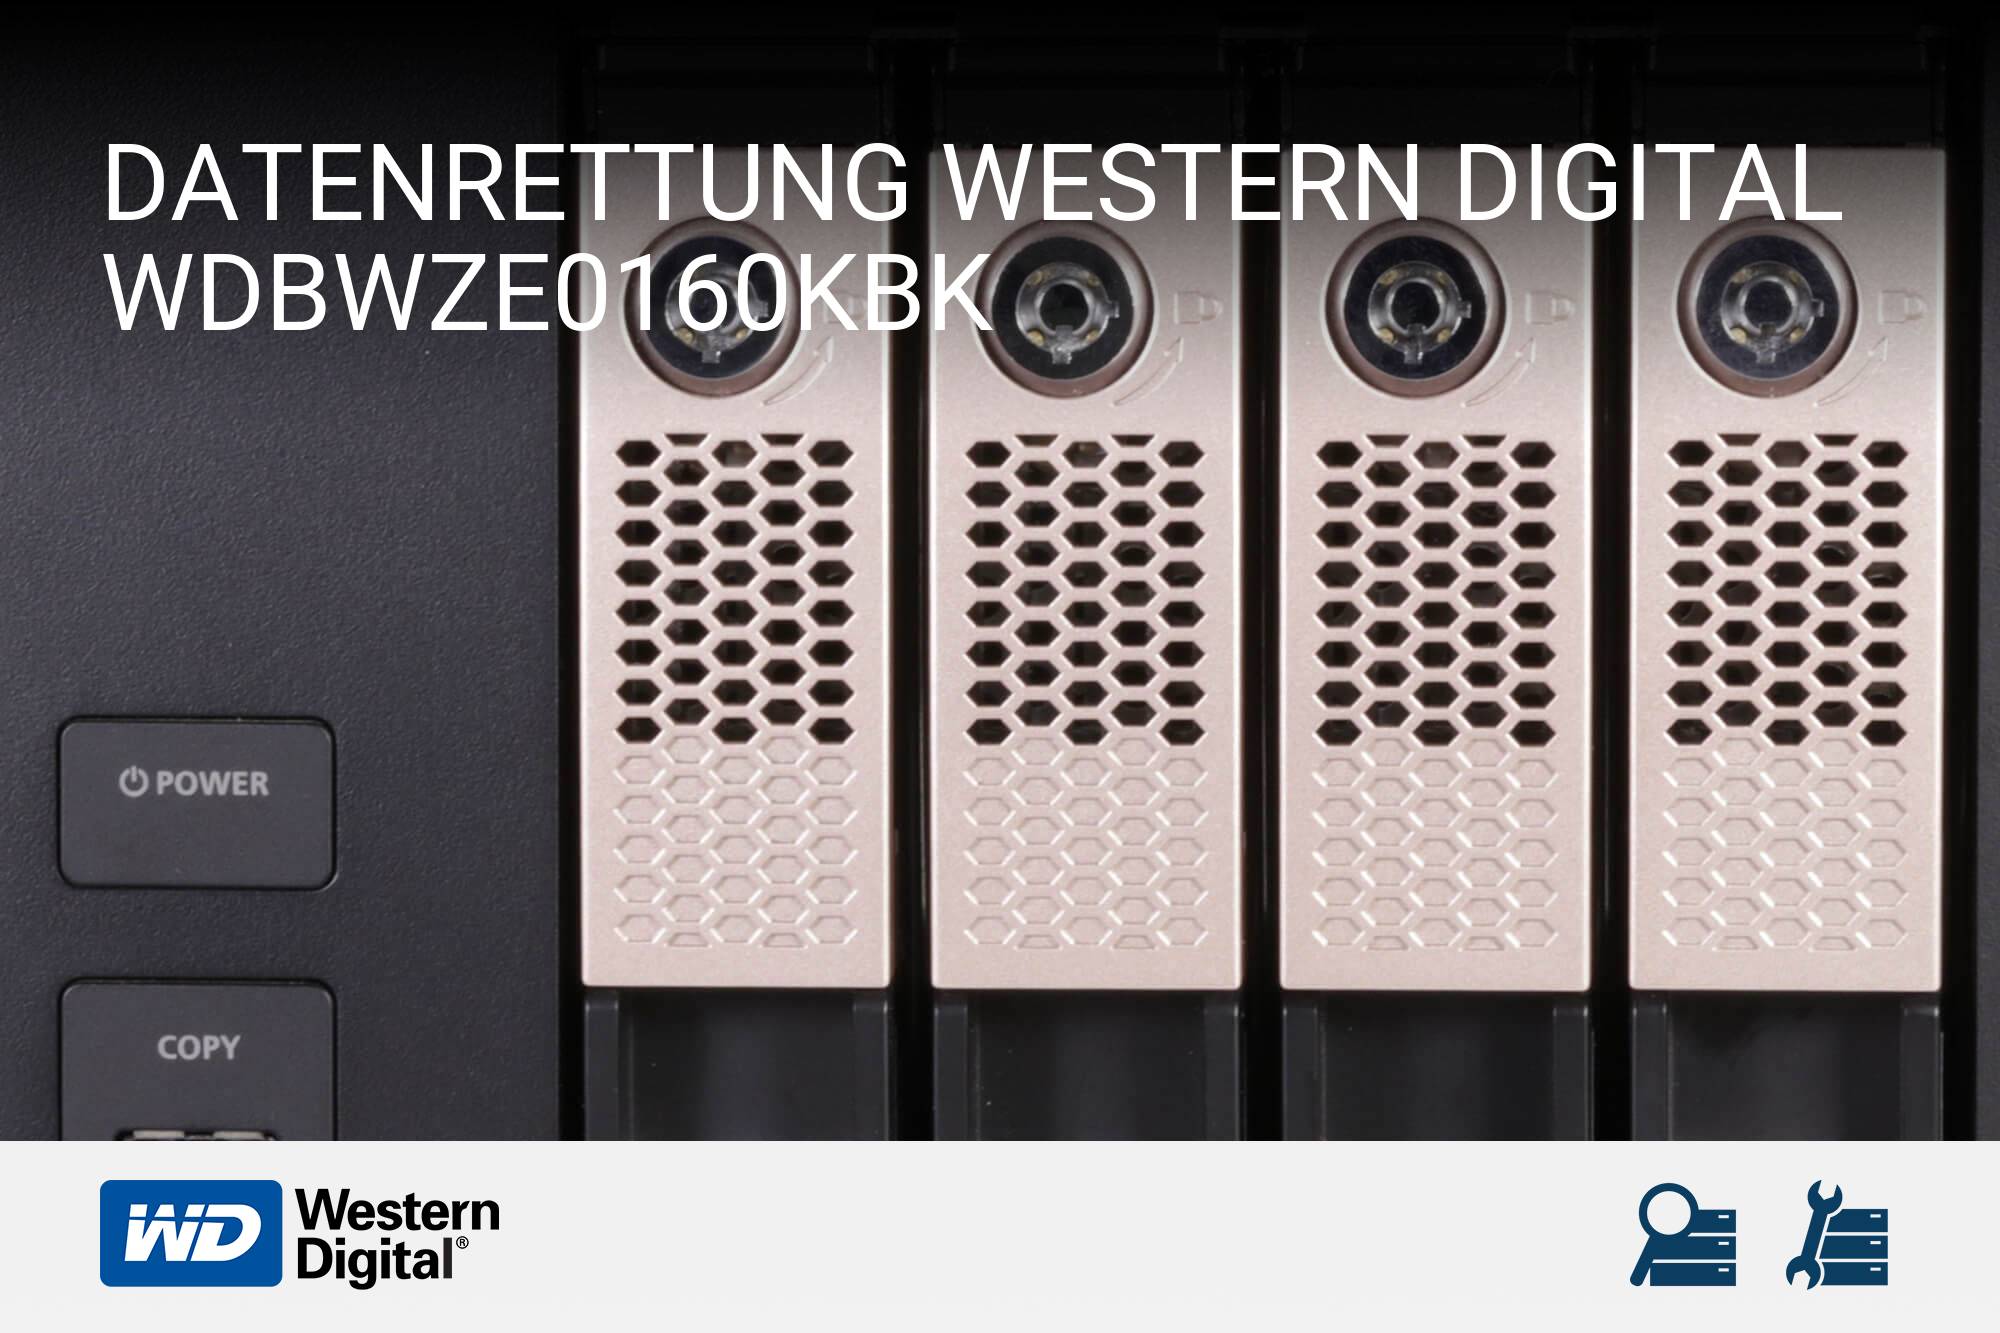 Western Digital WDBWZE0160KBK